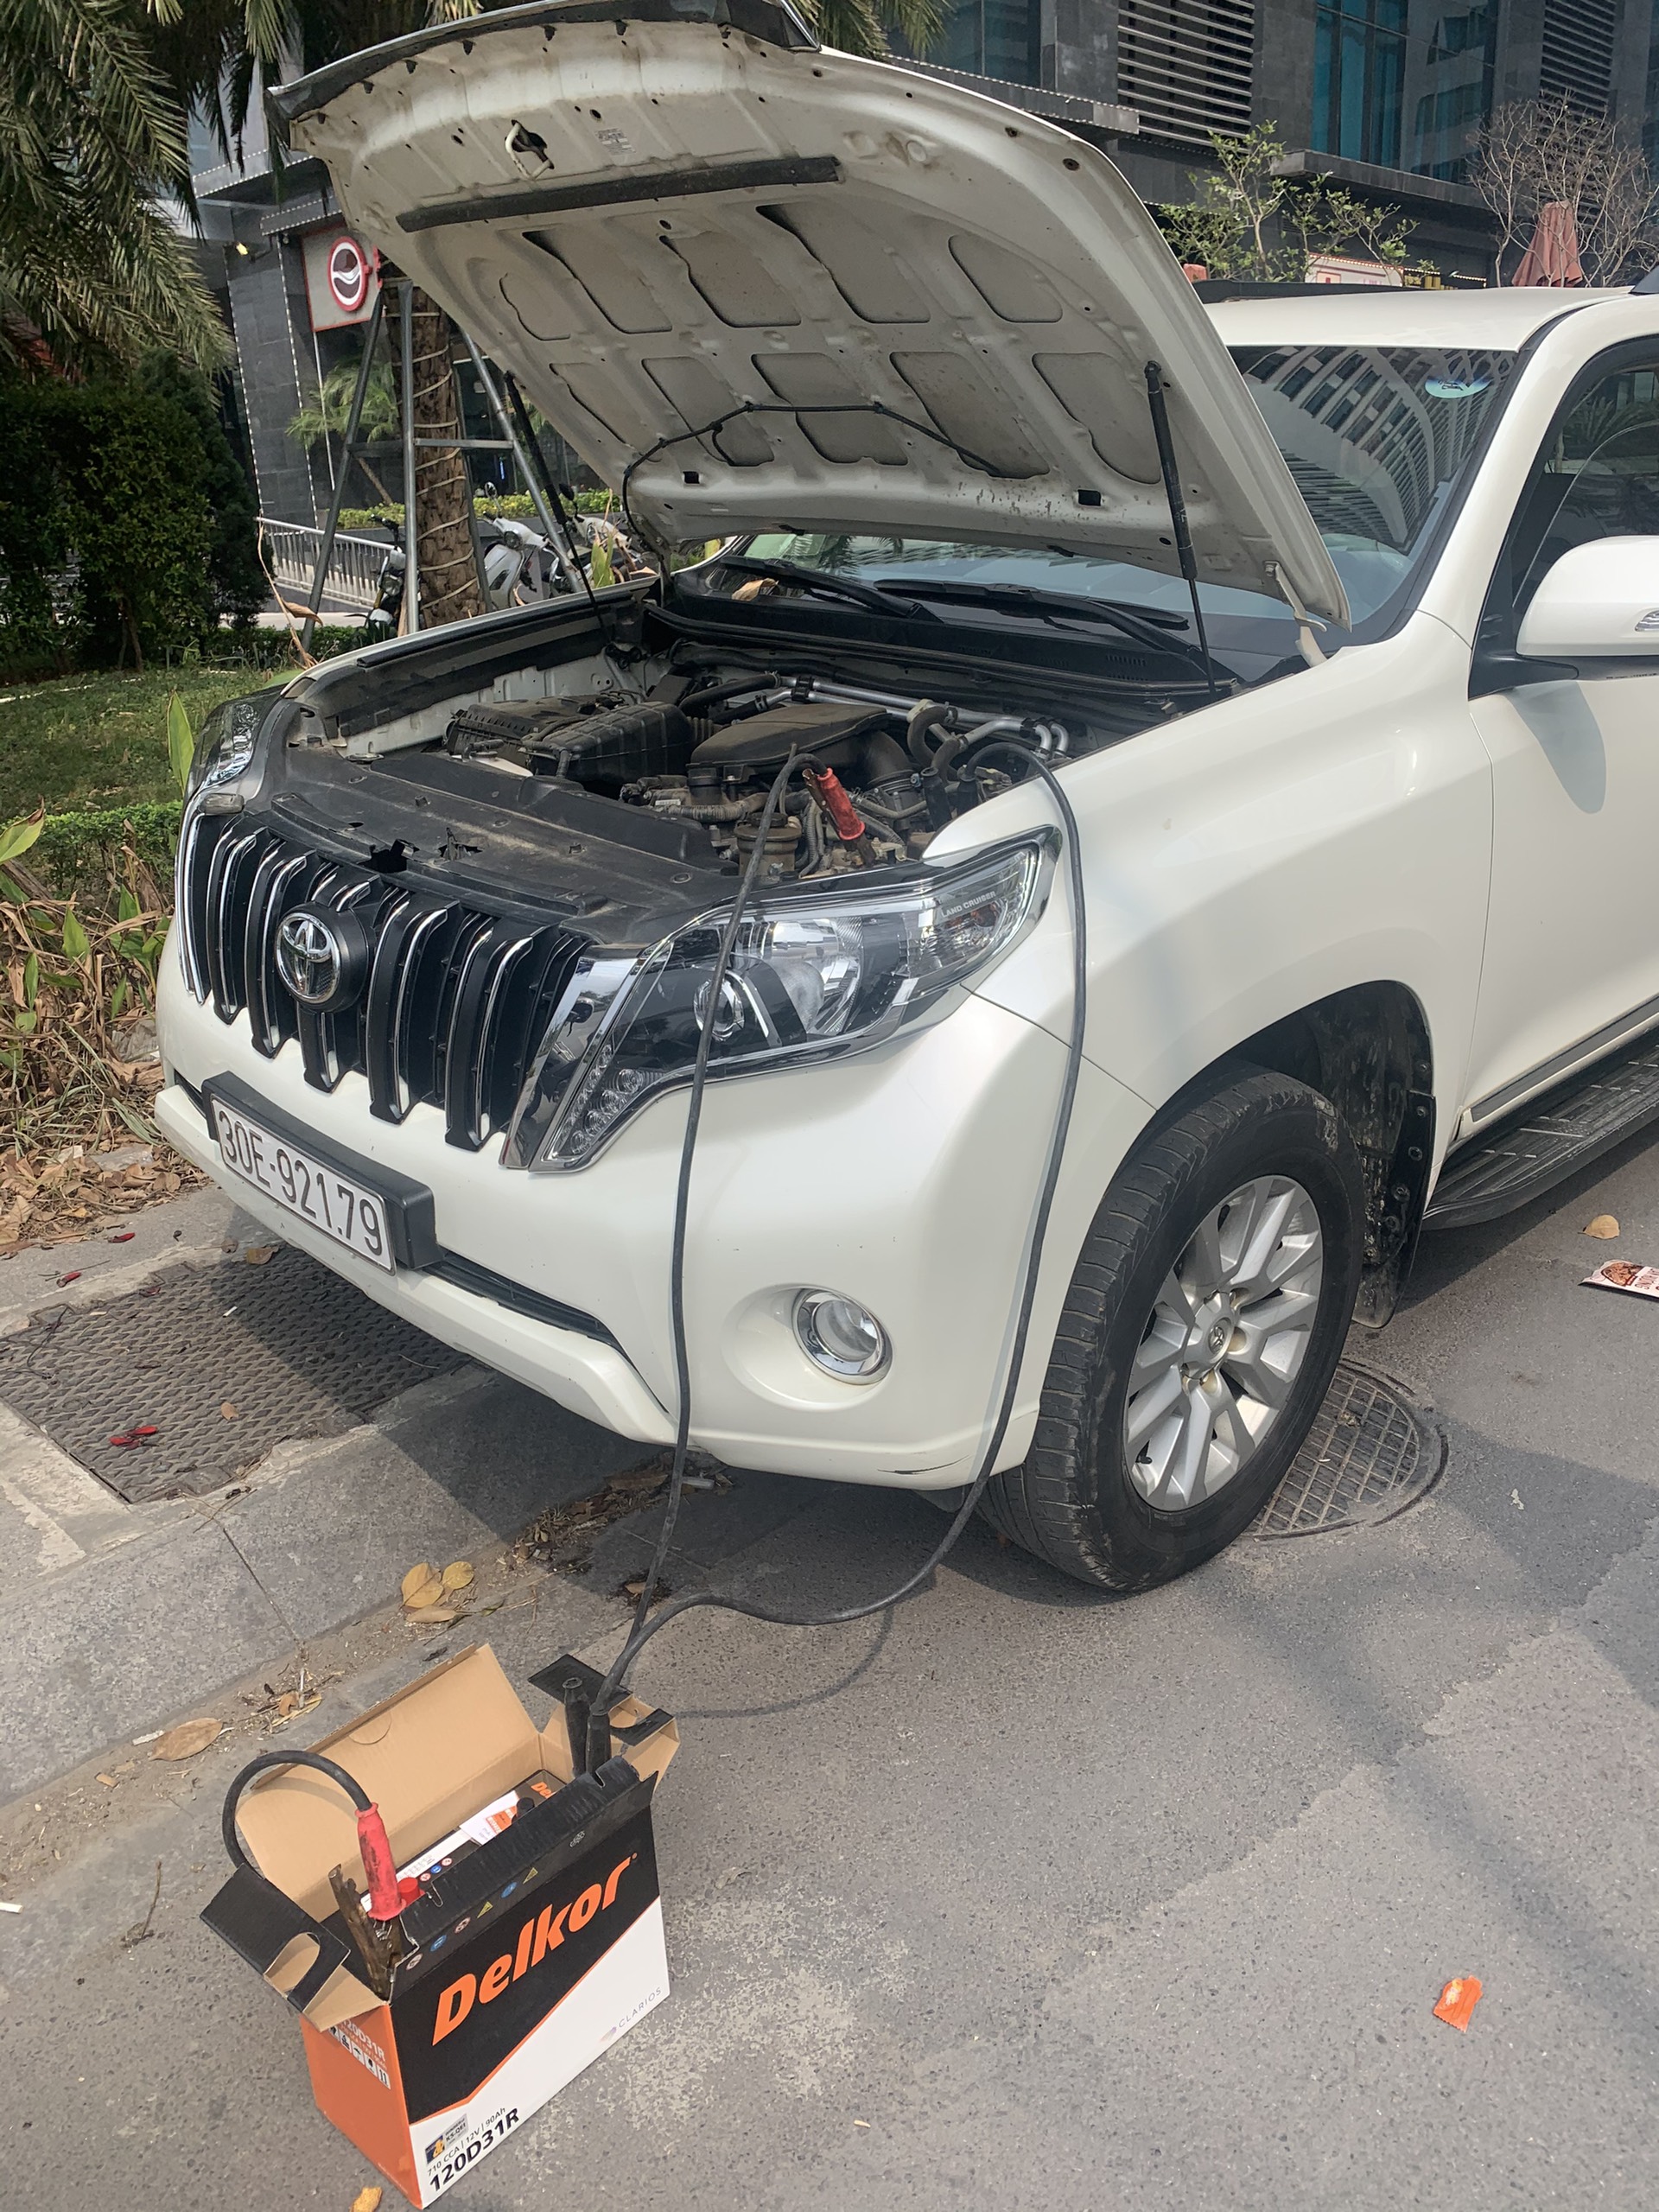 Cứu hộ câu Kích sạc thay bình ắc quy ô tô tại Quận Tân Phú TP HCM